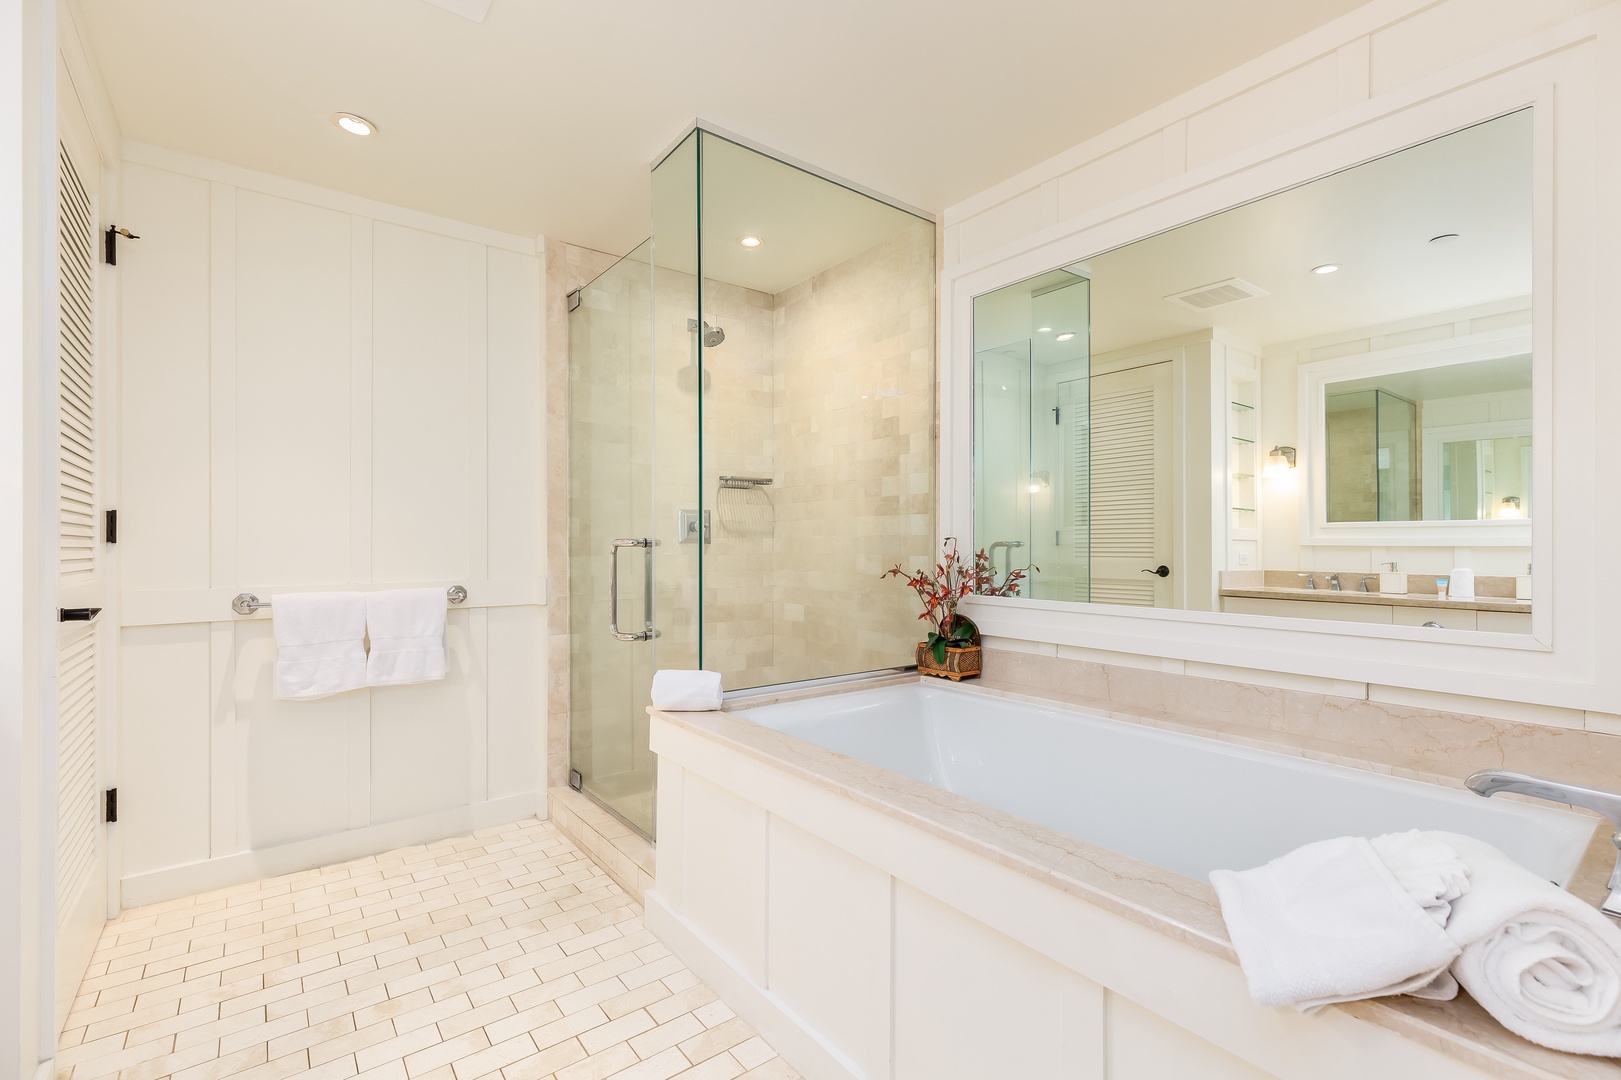 Kahuku Vacation Rentals, Turtle Bay Villas 201 - Deep soaking tub, separate shower and dual-sink vanity